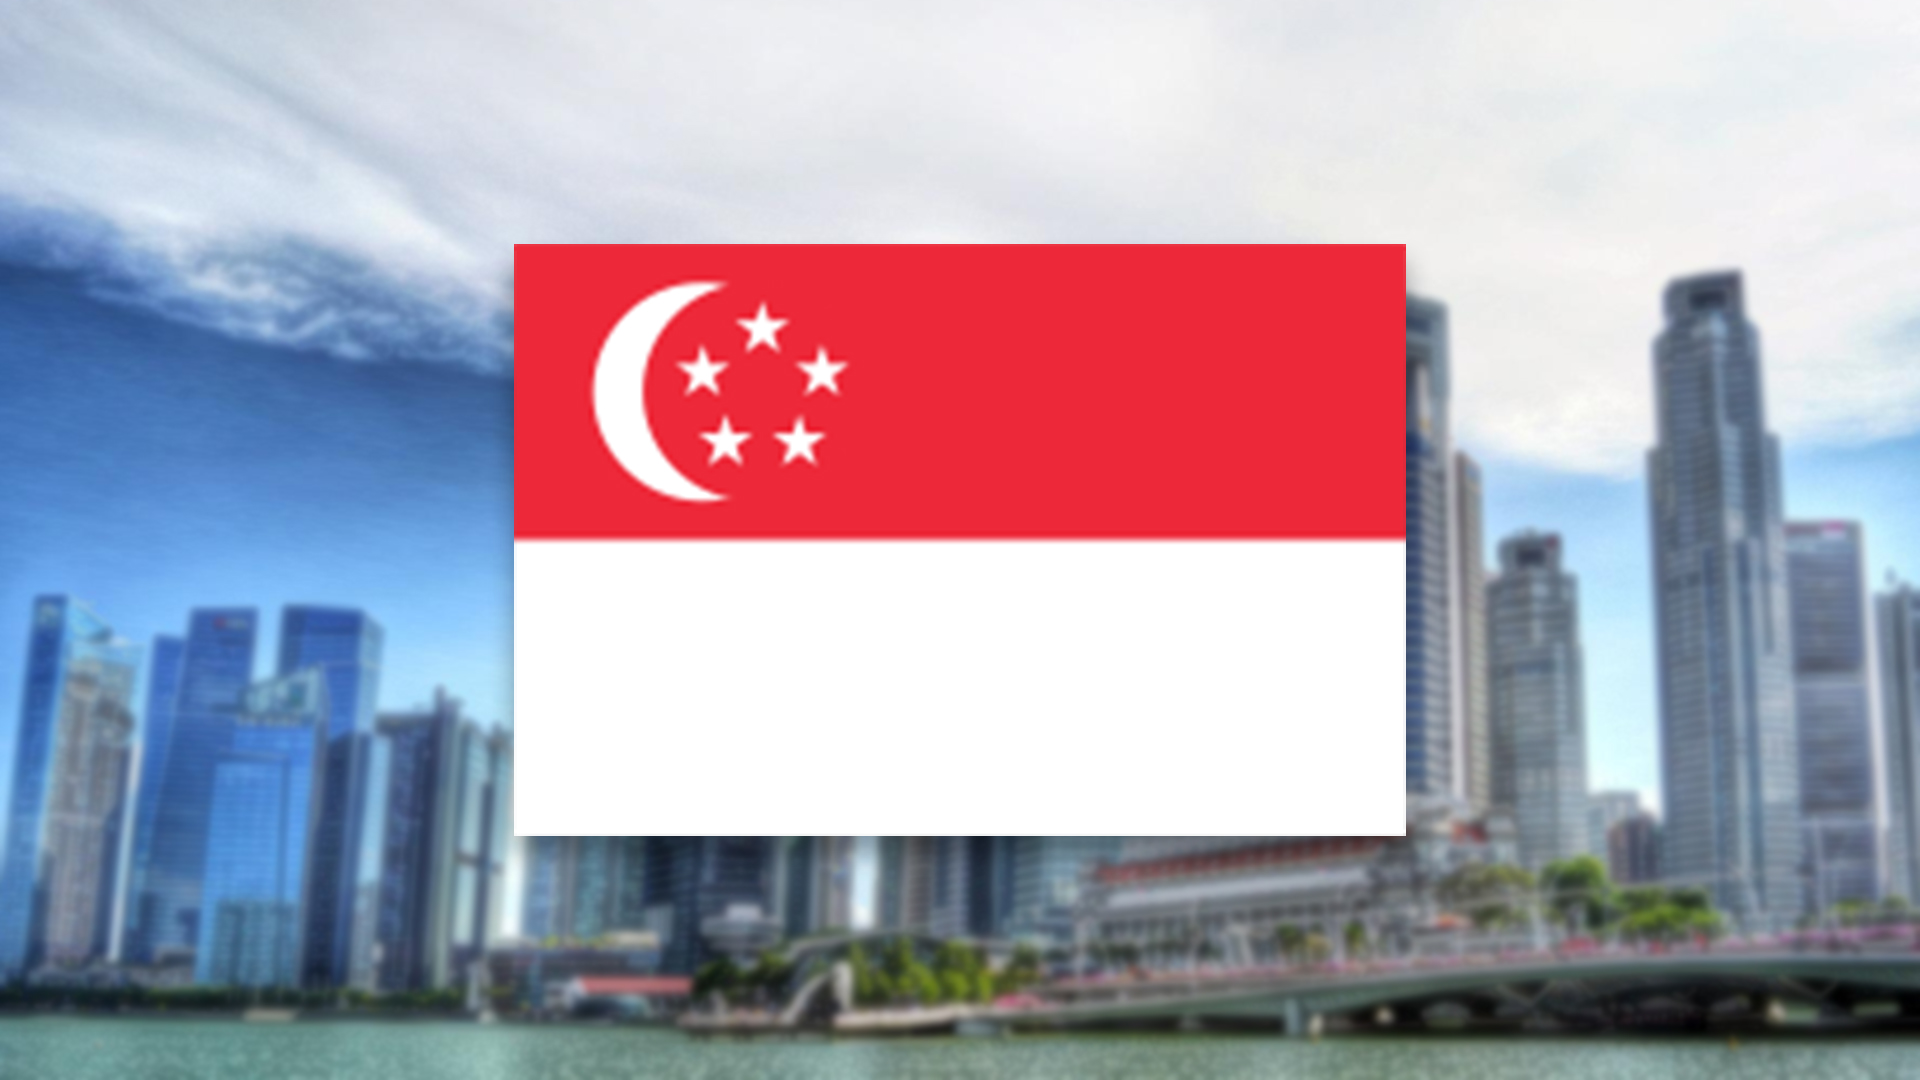 Read more about the article Auswandern nach Singapur – das erwartet dich im Stadtstaat Singapur